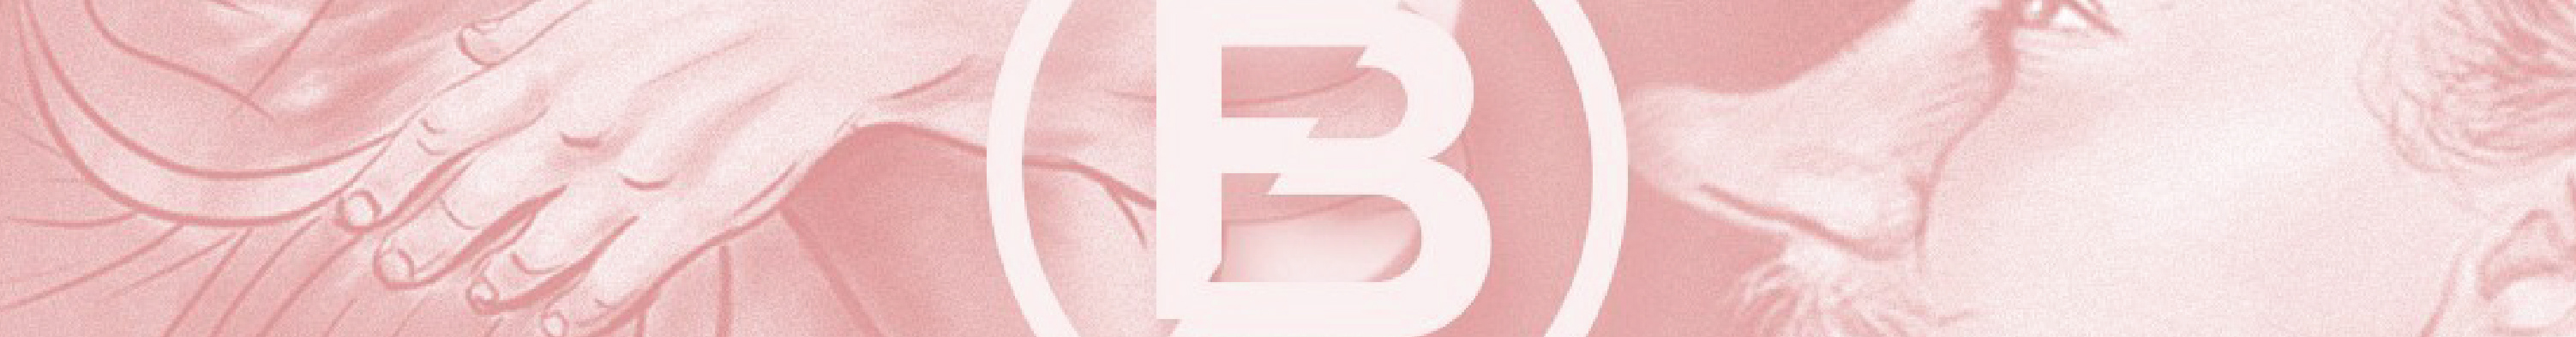 Profil-Banner von ferhat bengu